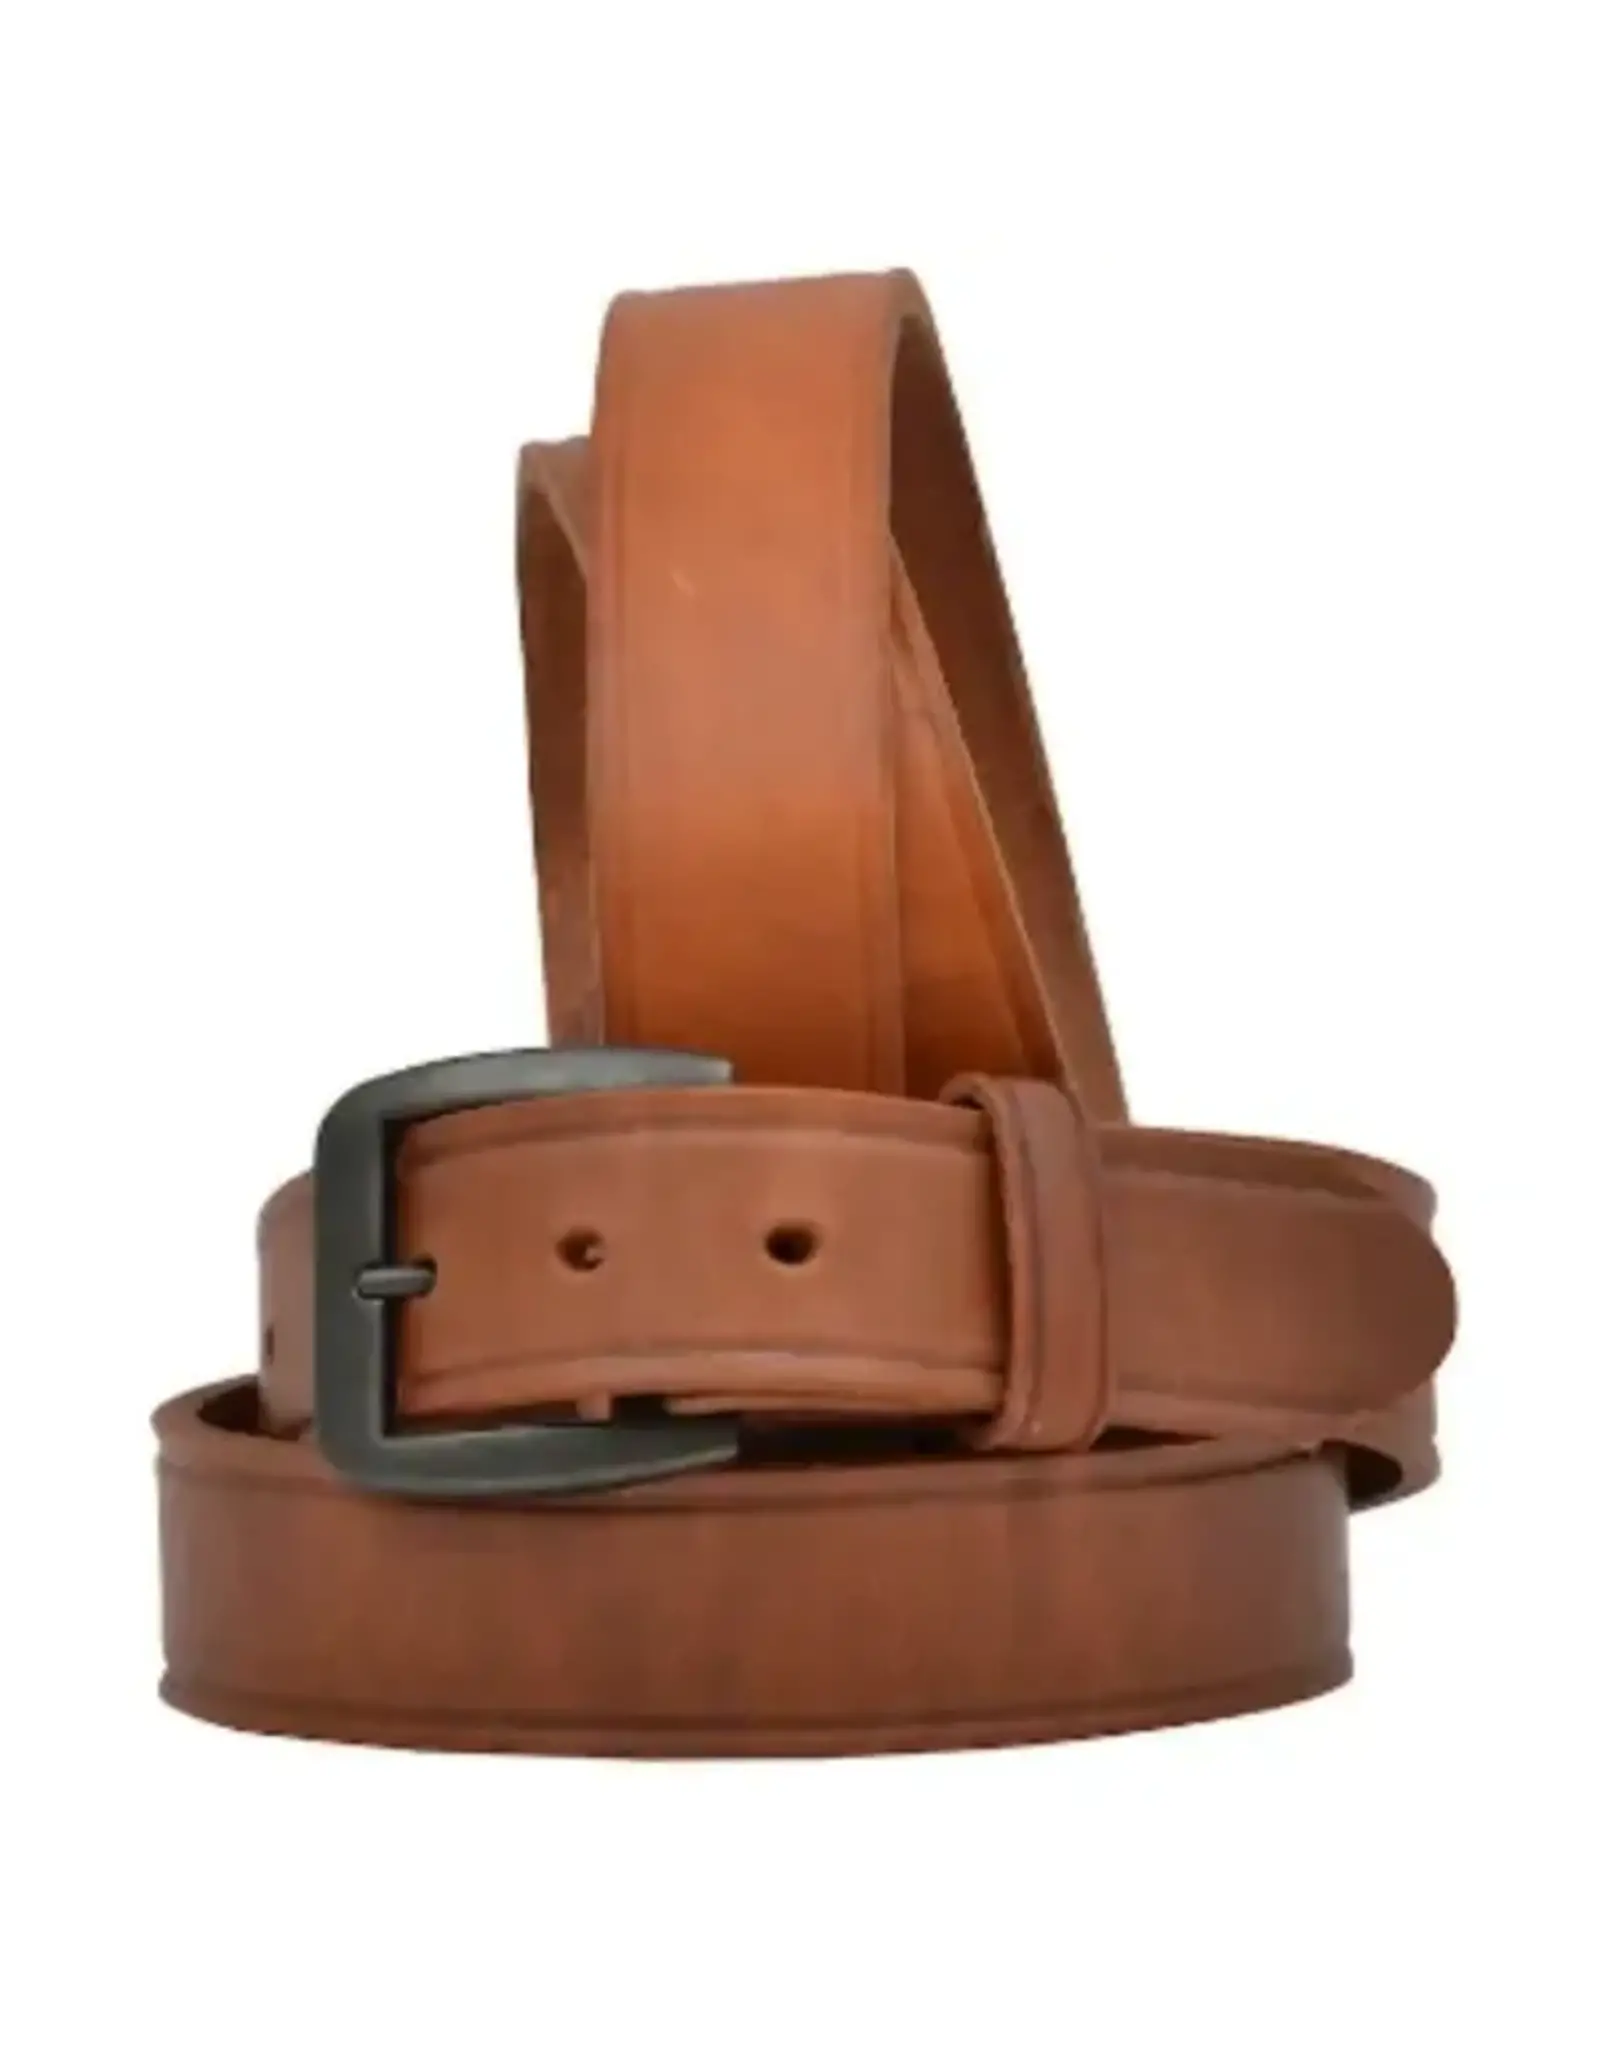 3D Men’s Plain Thick Leather Belt D1147-40